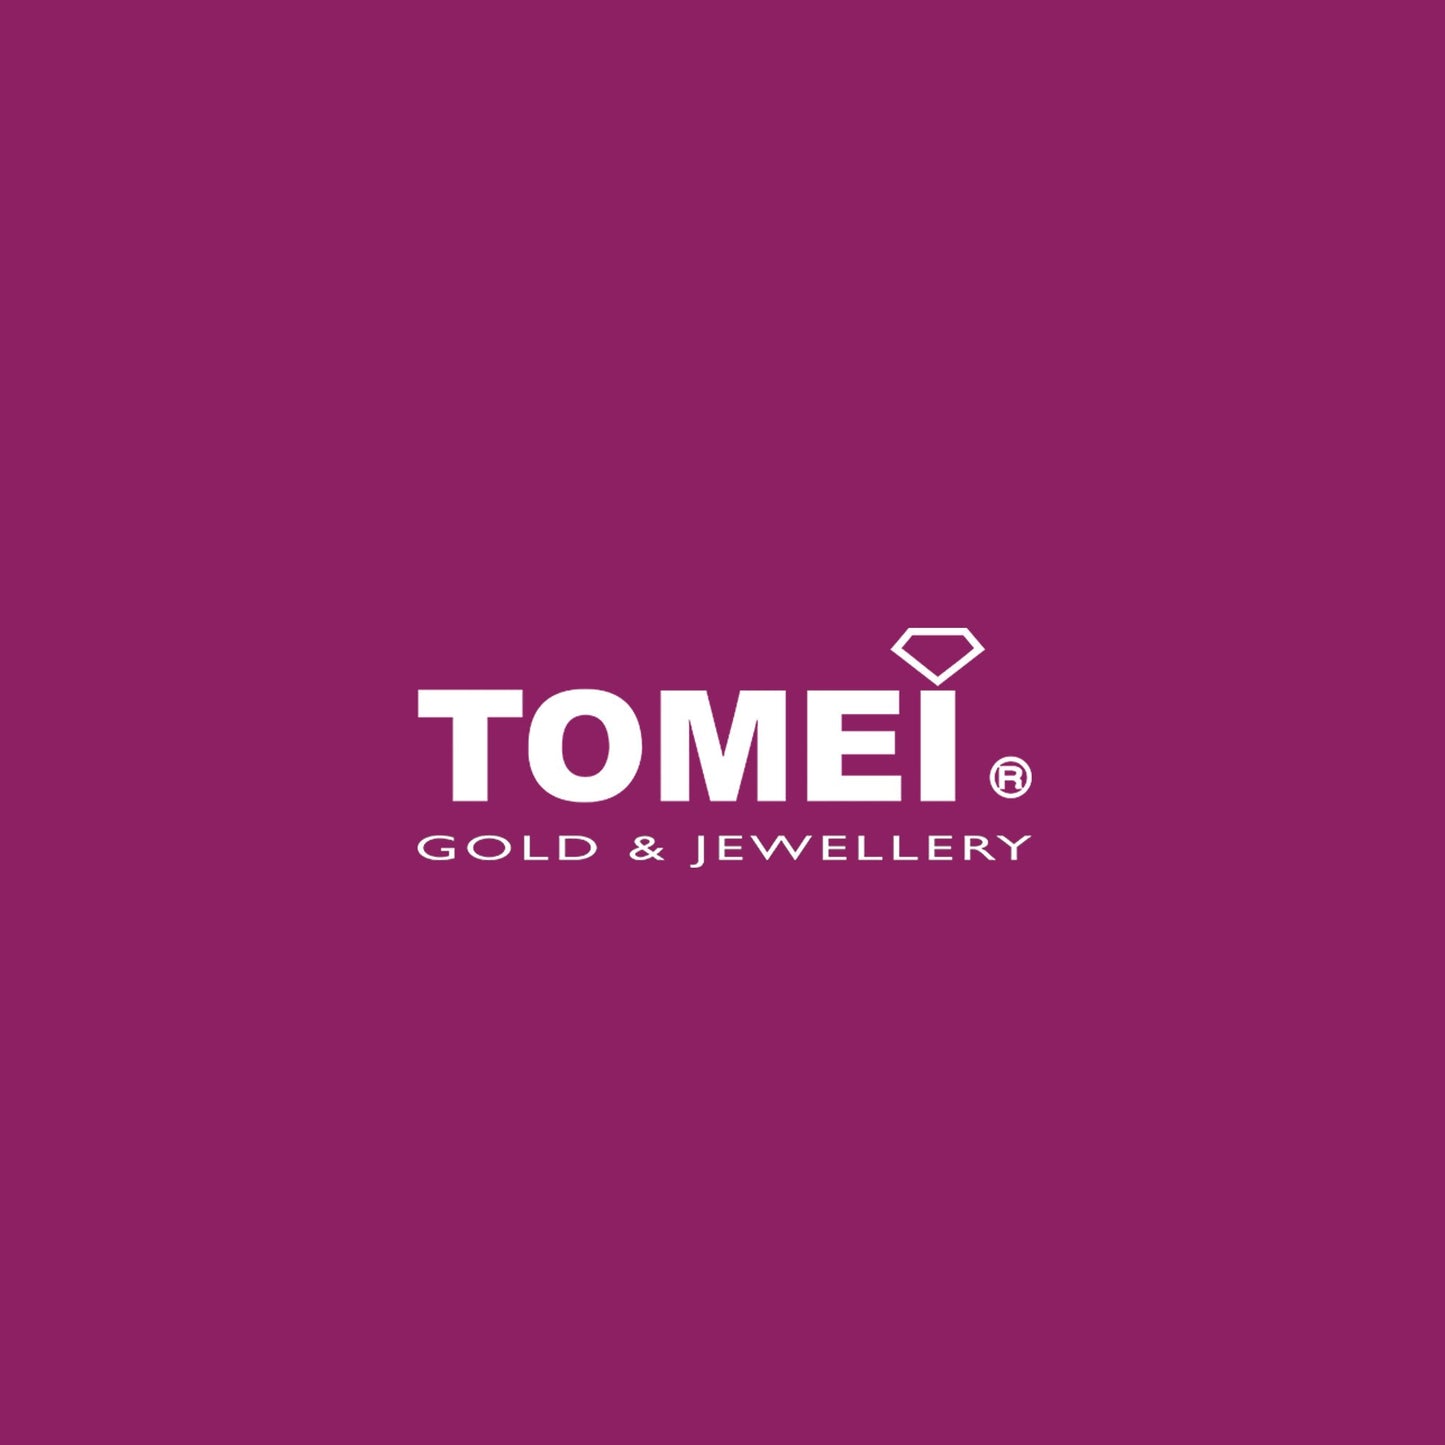 TOMEI Princess Cut Diamond RIng, White Gold 750 (454115 Z1713R)